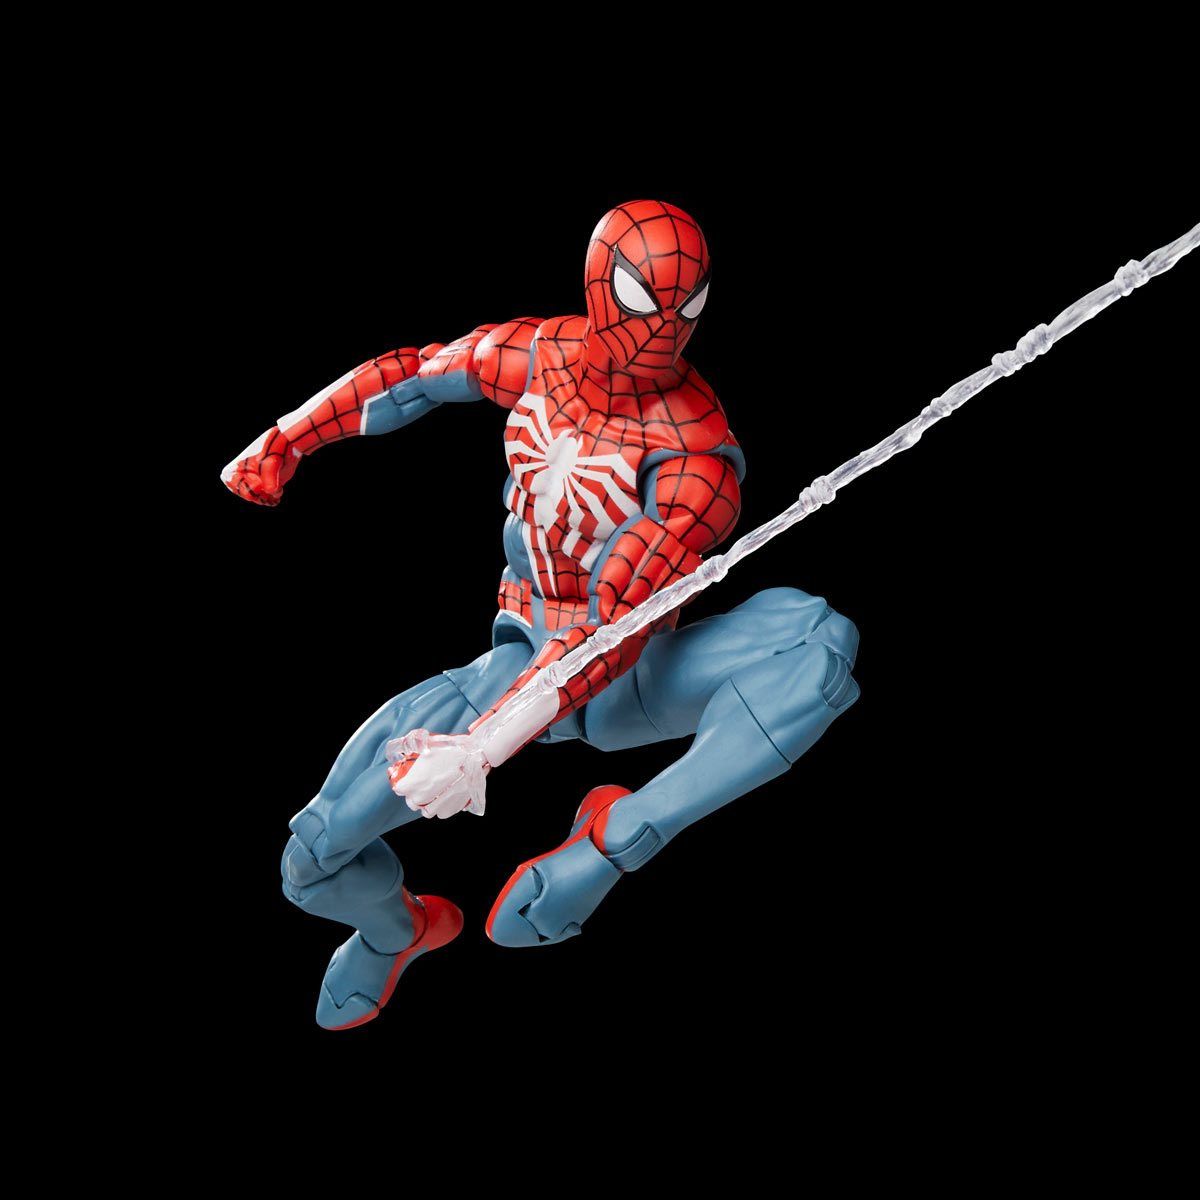 Spider-Man 2 Marvel Legends Gamerverse Hasbro